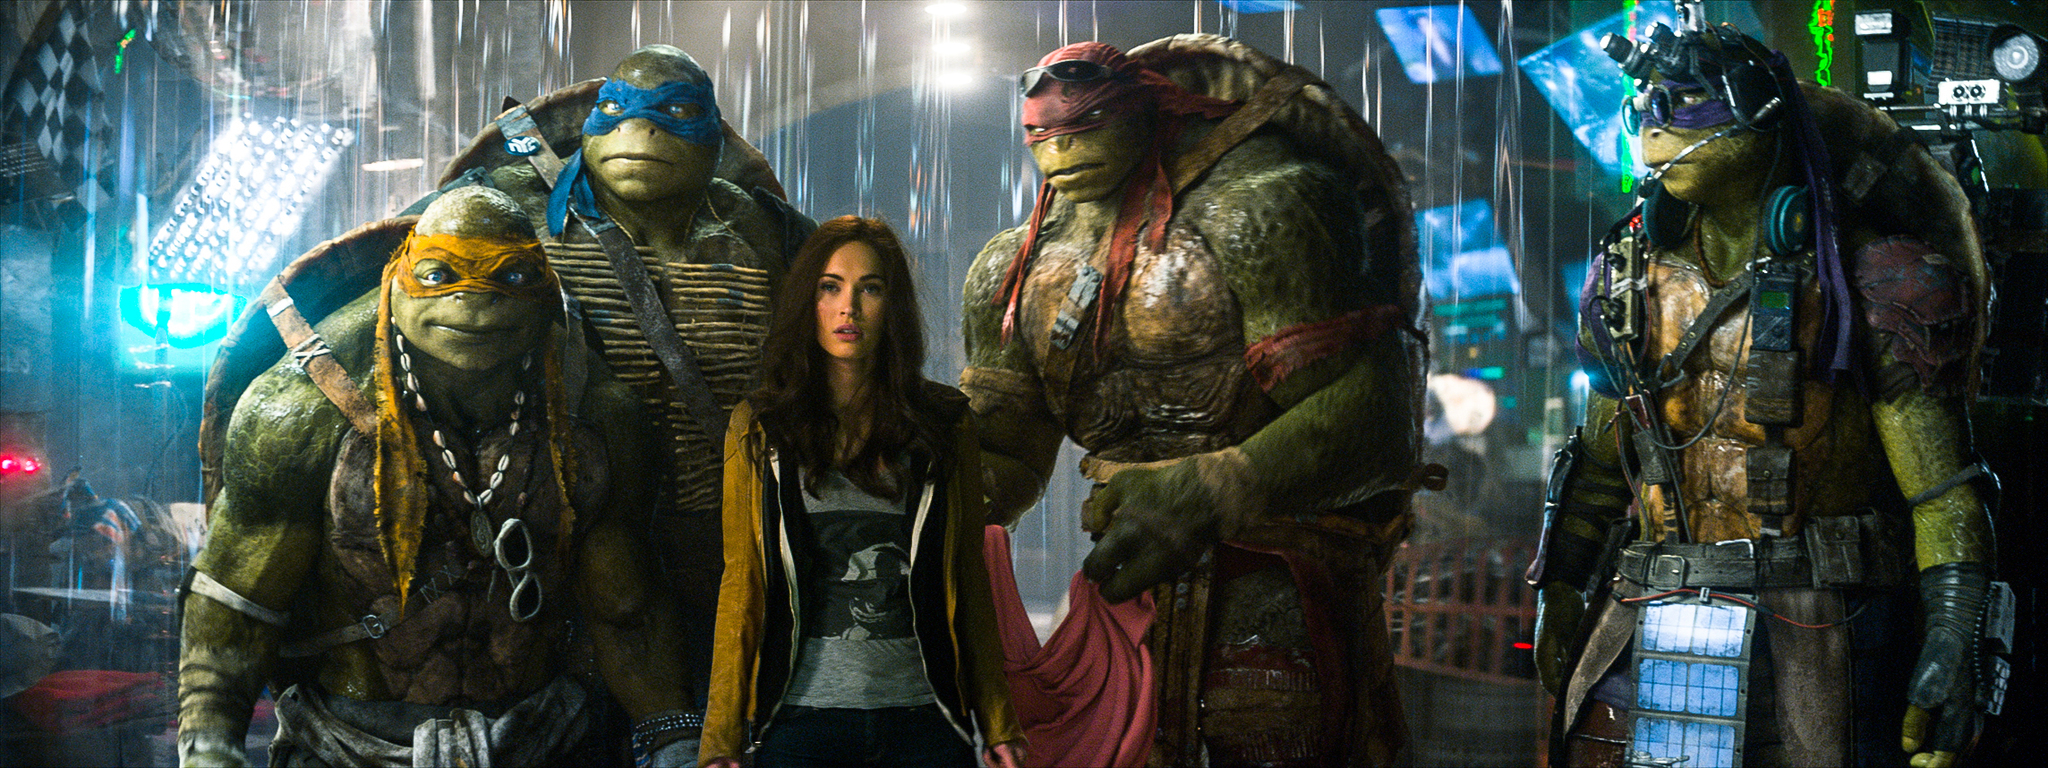 Phim của Megan Fox đóng: Ninja rùa: Hỗn loạn tuổi dậy thì - Teenage Mutant Ninja Turtles (2014)